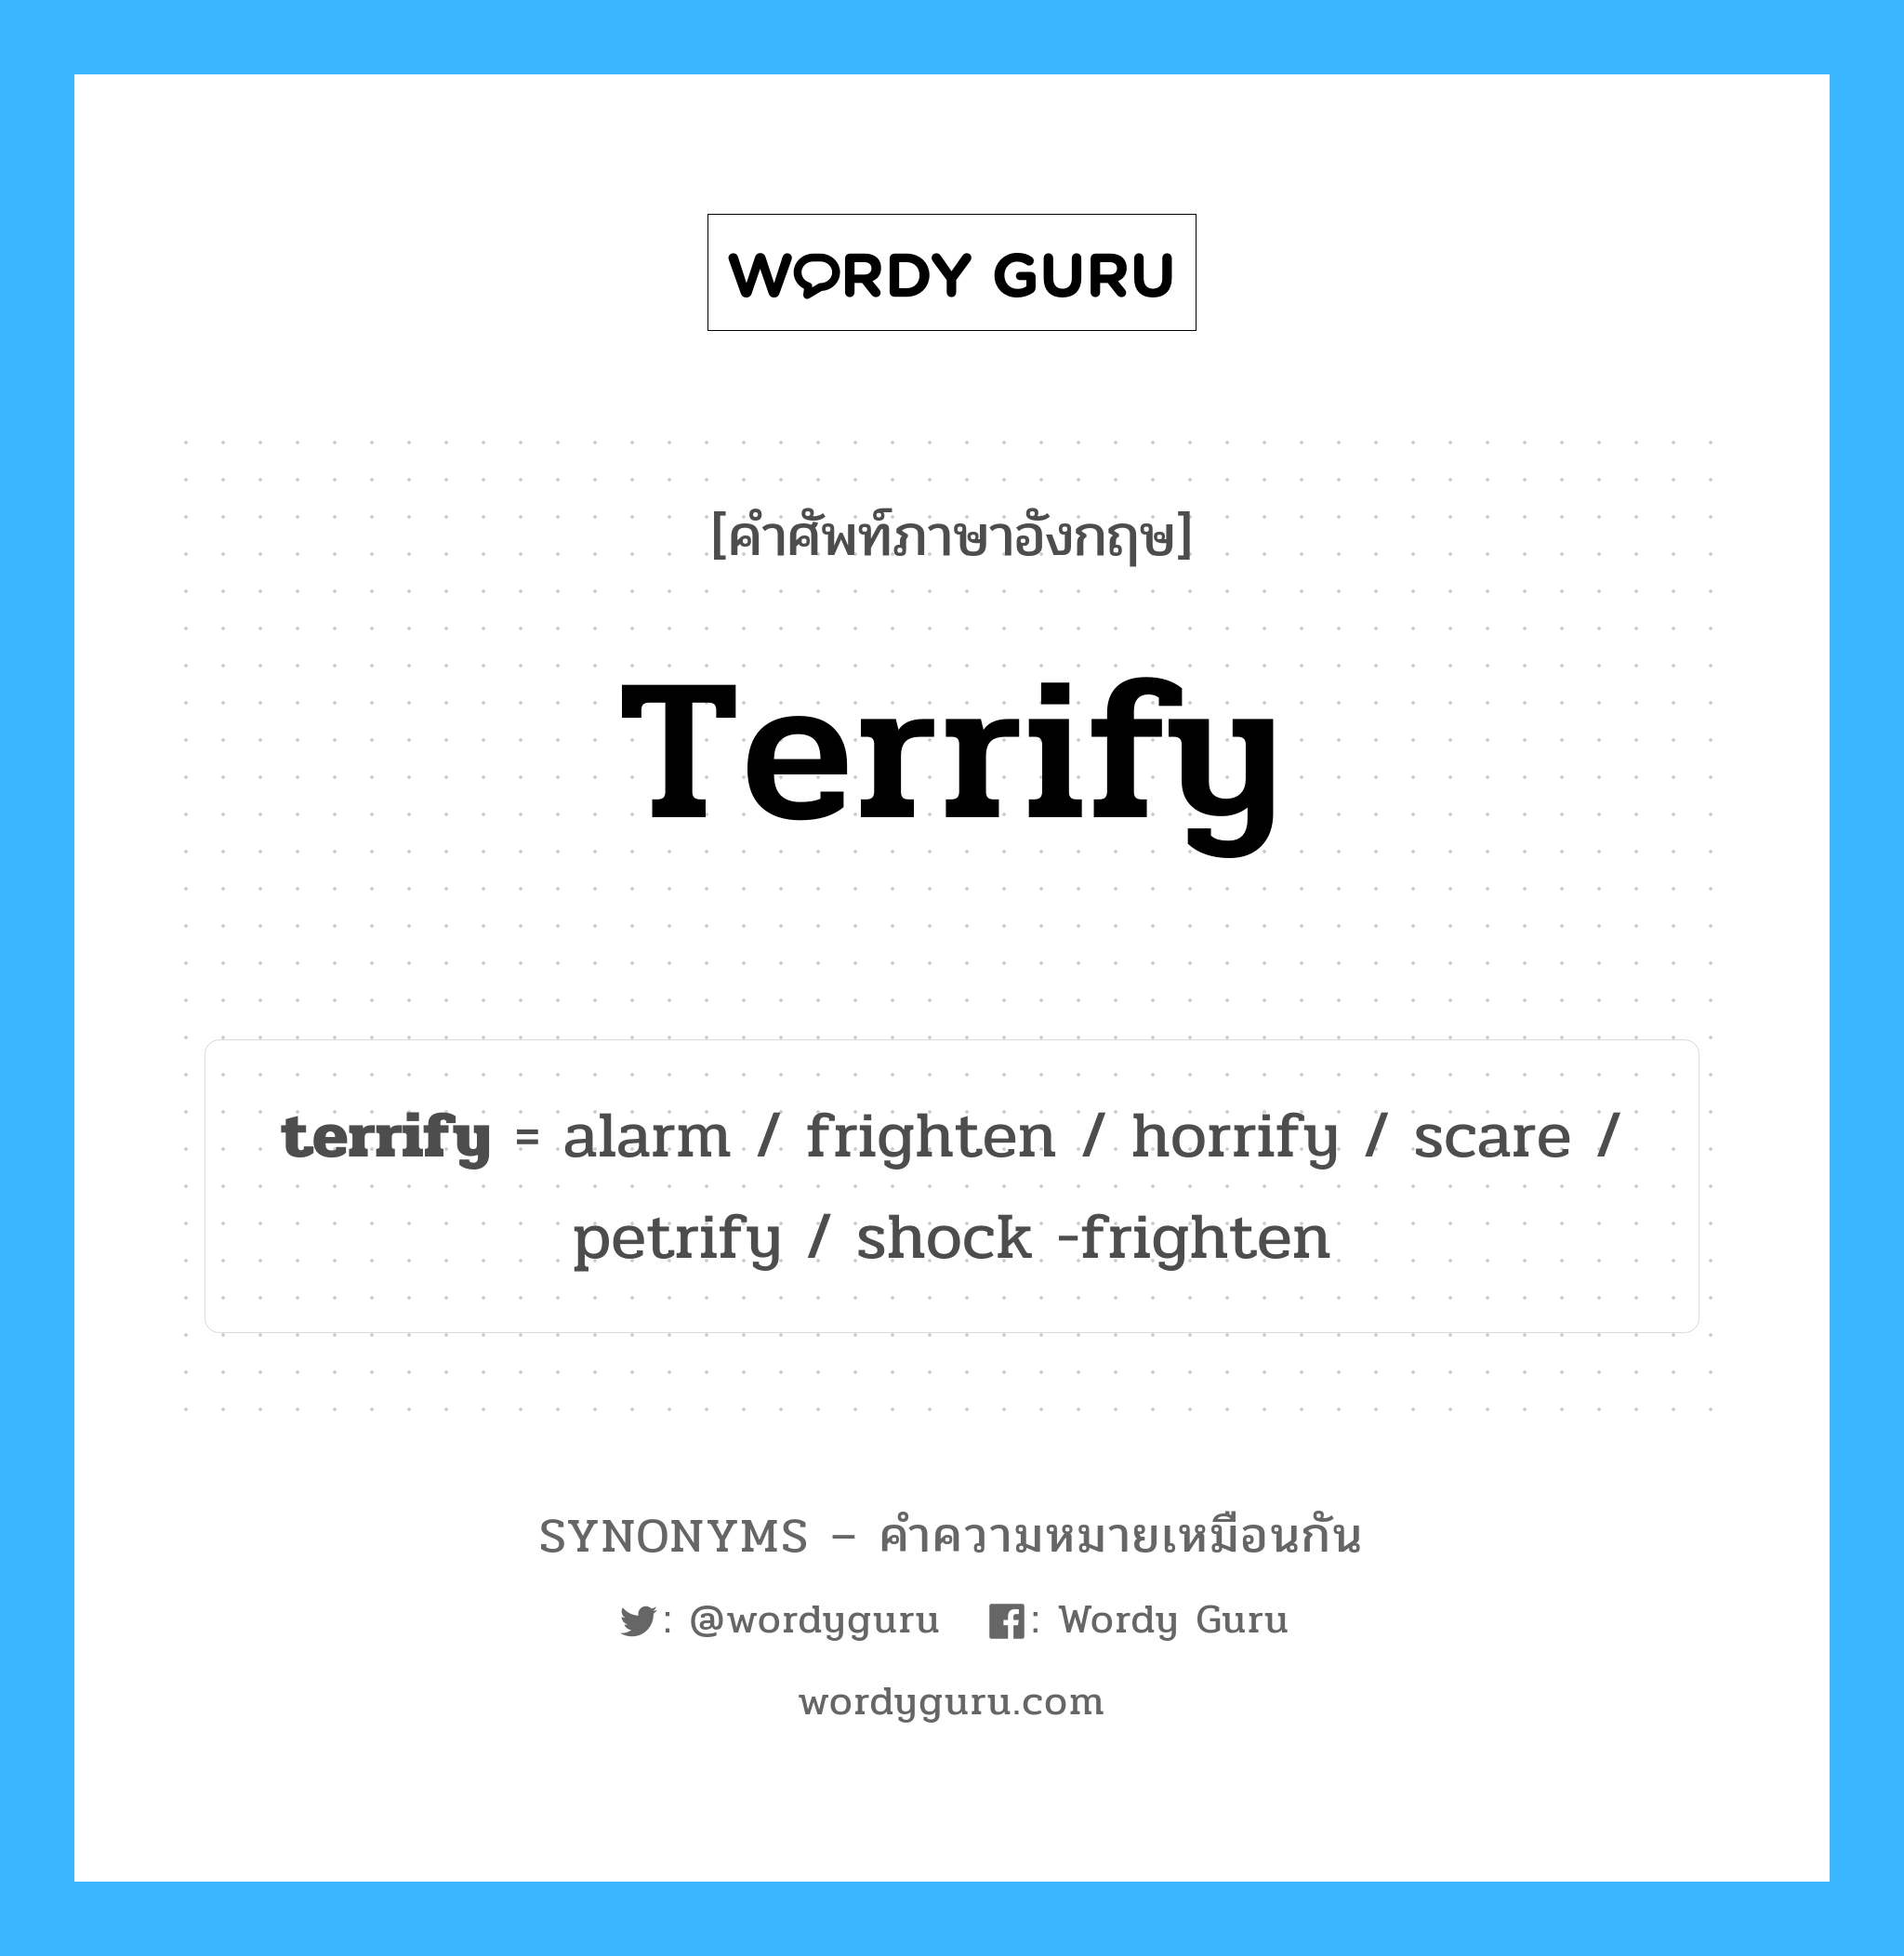 horrify เป็นหนึ่งใน terrify และมีคำอื่น ๆ อีกดังนี้, คำศัพท์ภาษาอังกฤษ horrify ความหมายคล้ายกันกับ terrify แปลว่า horrify หมวด terrify